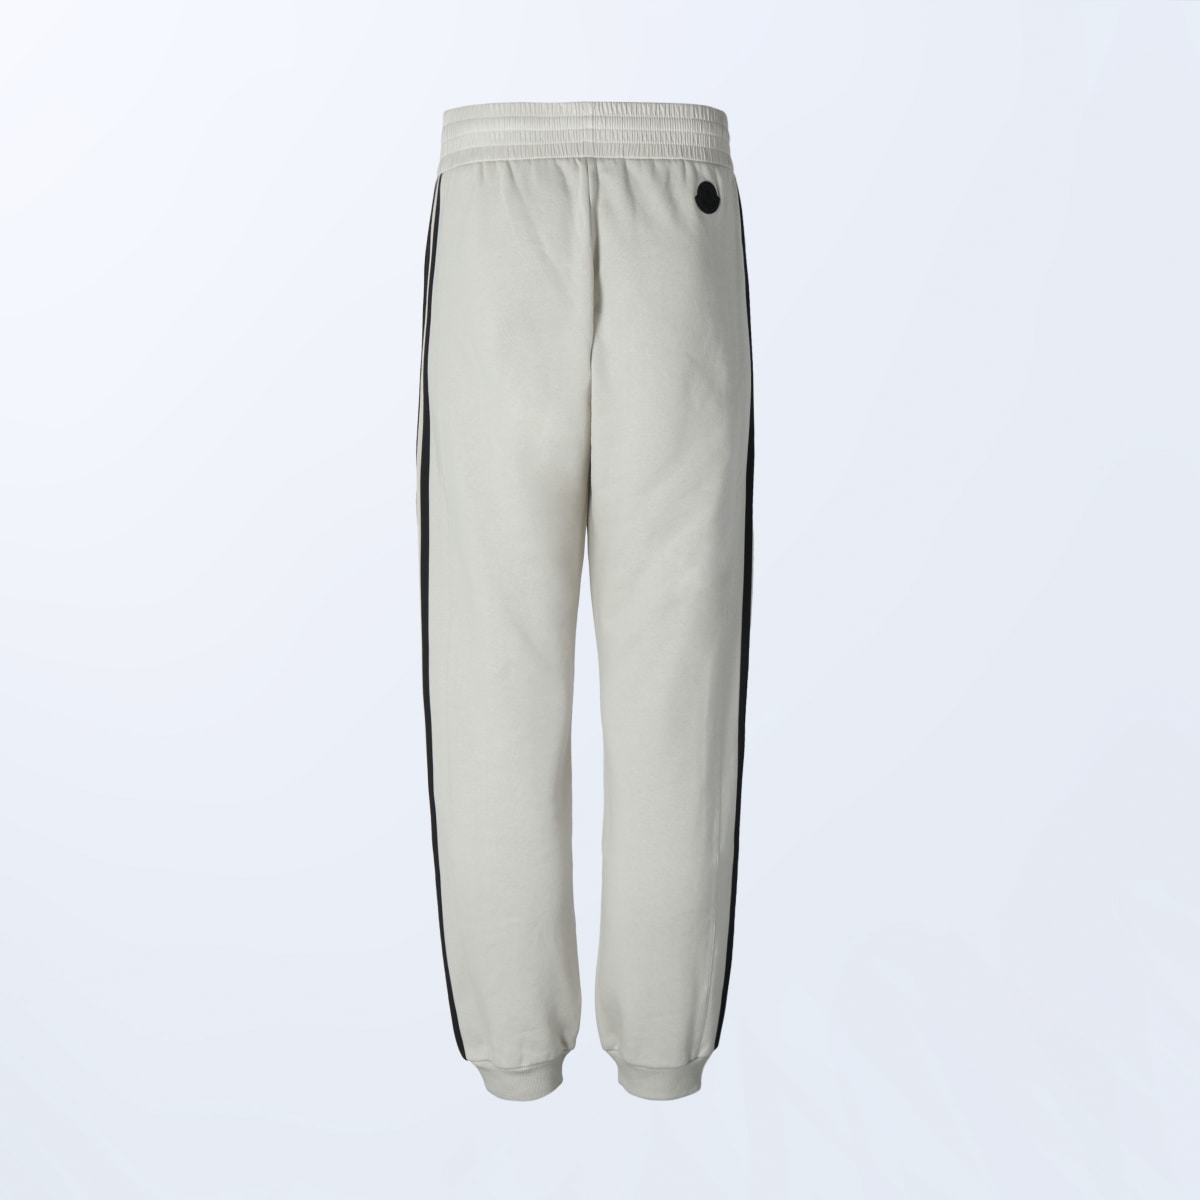 Adidas Sweat pants Moncler x adidas Originals. 7